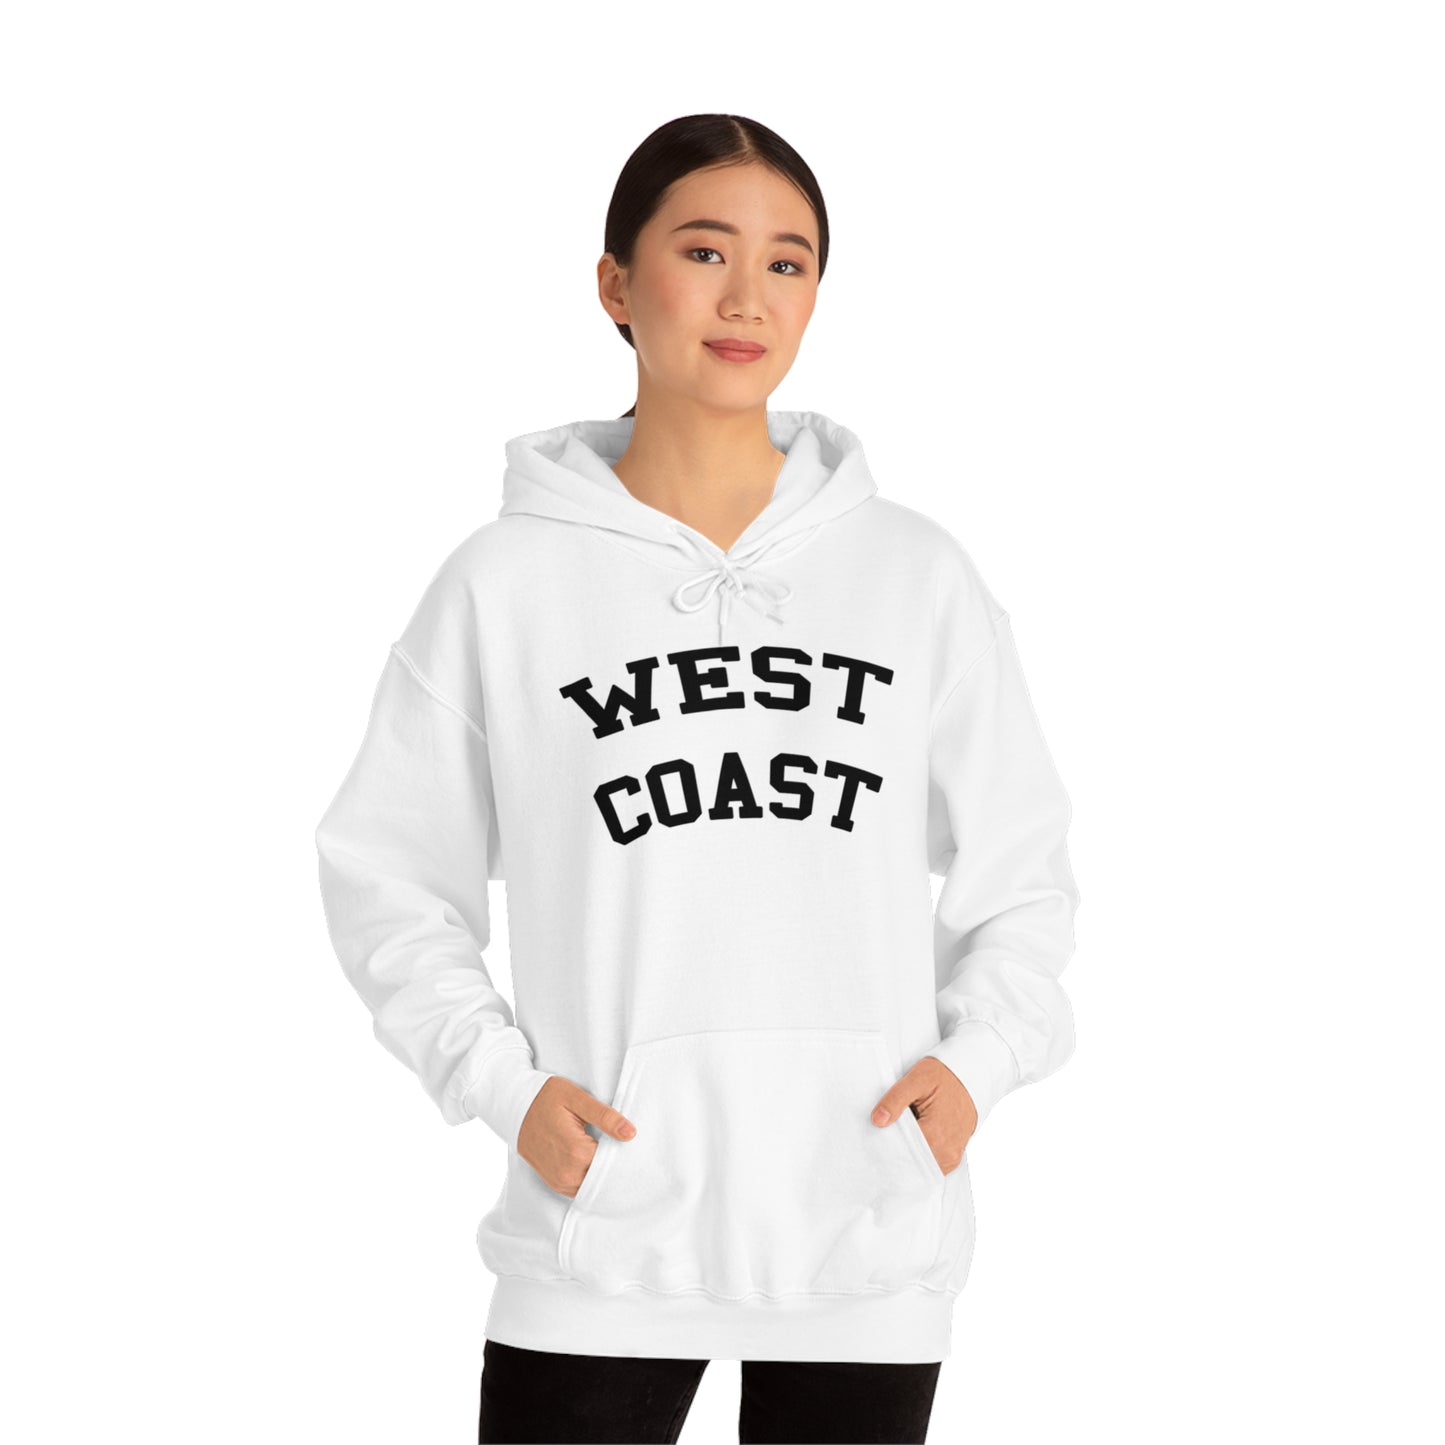 West Coast Hoodie Sweatshirt